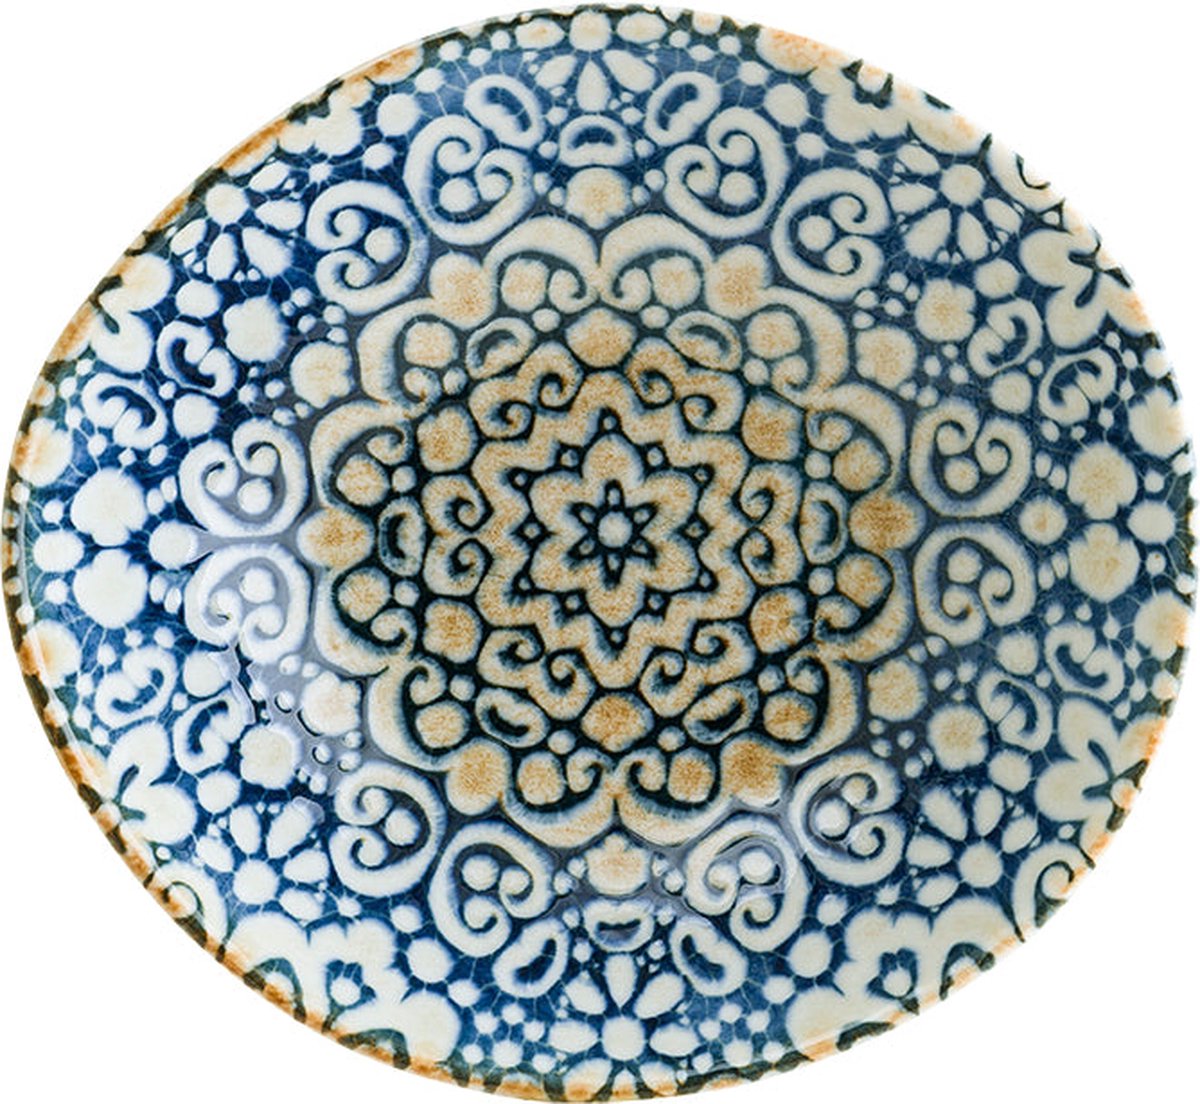 Bonna kommetje - Alhambra - Porselein - 18 cm 470 cc - set van 6